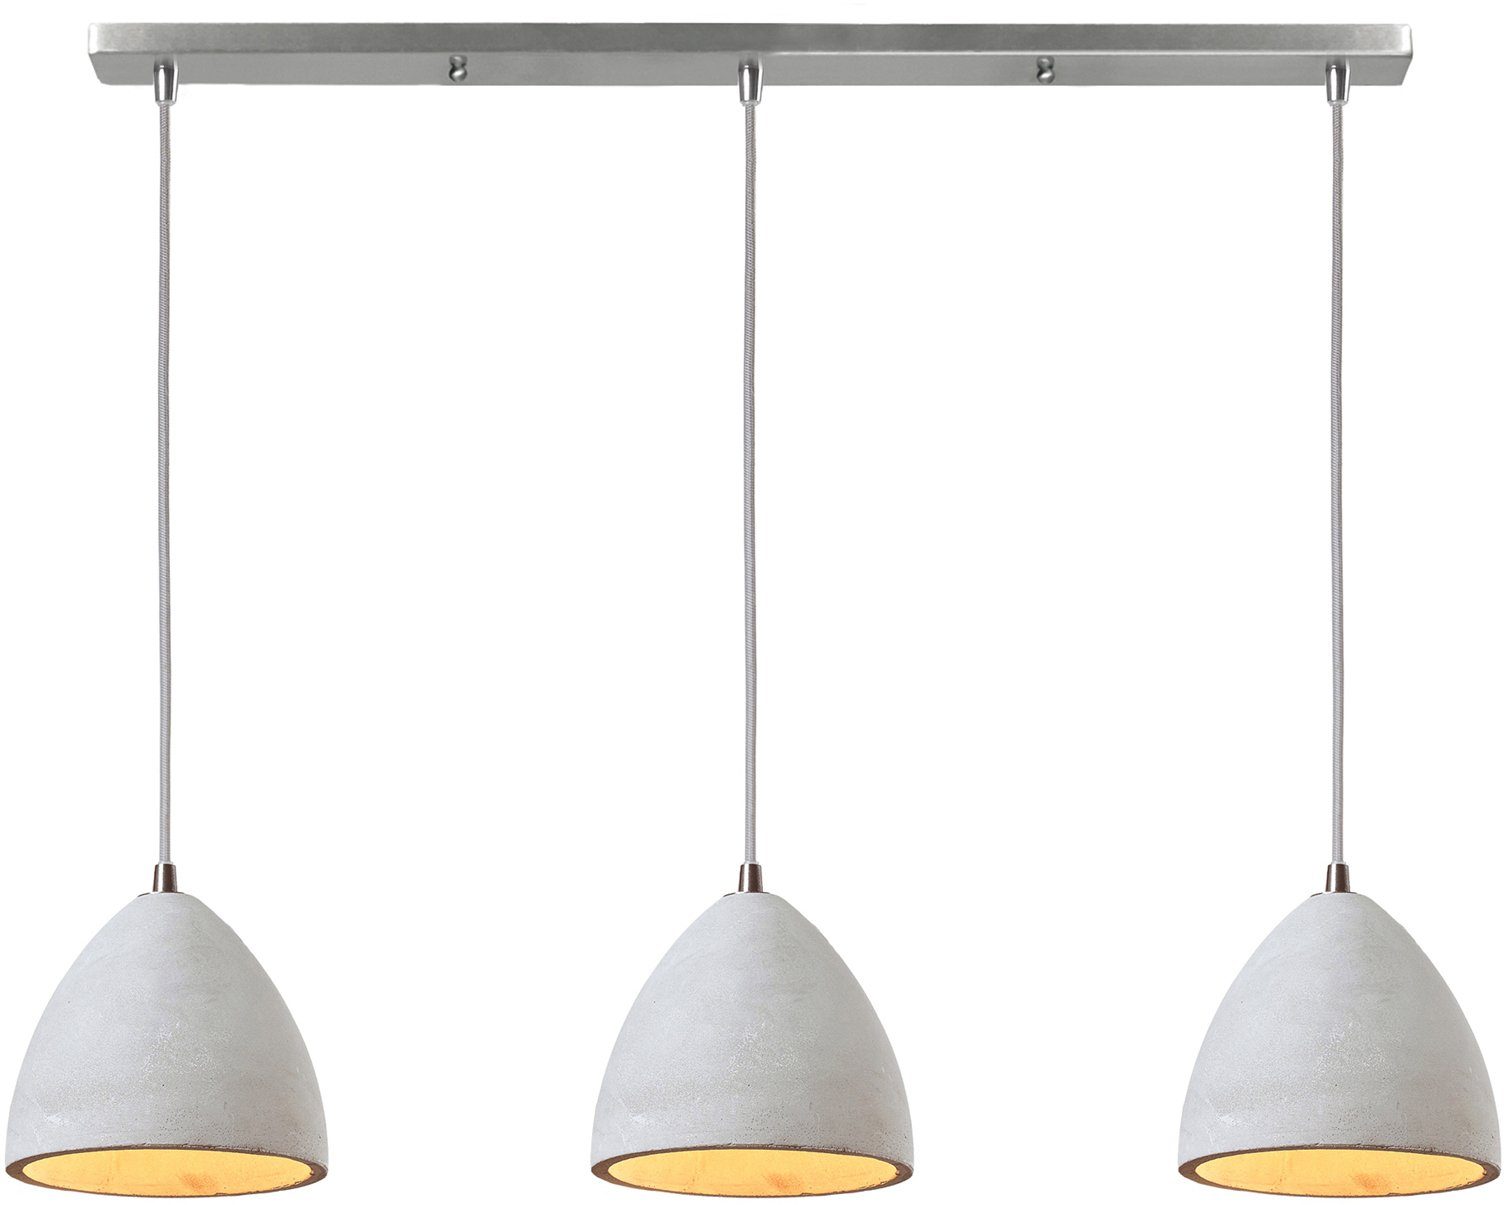 SalesFever Hanglamp Nora 3x lampenkappen van beton